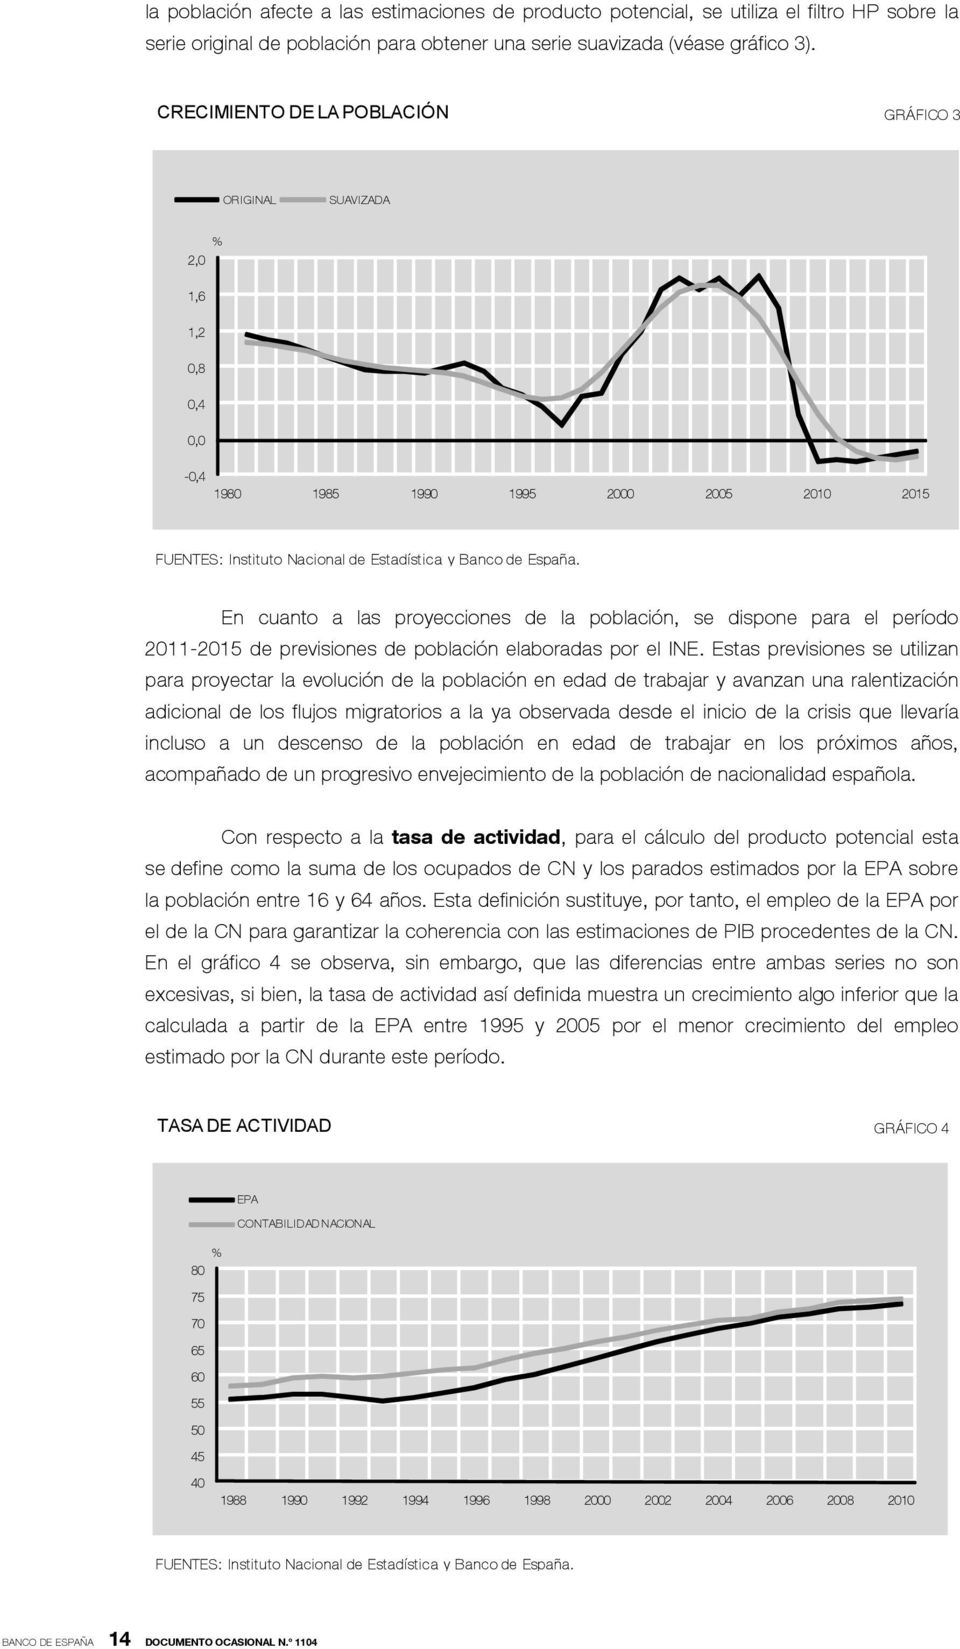 En cuanto a las proyecciones de la población, se dispone para el período 2011-2015 de previsiones de población elaboradas por el INE.